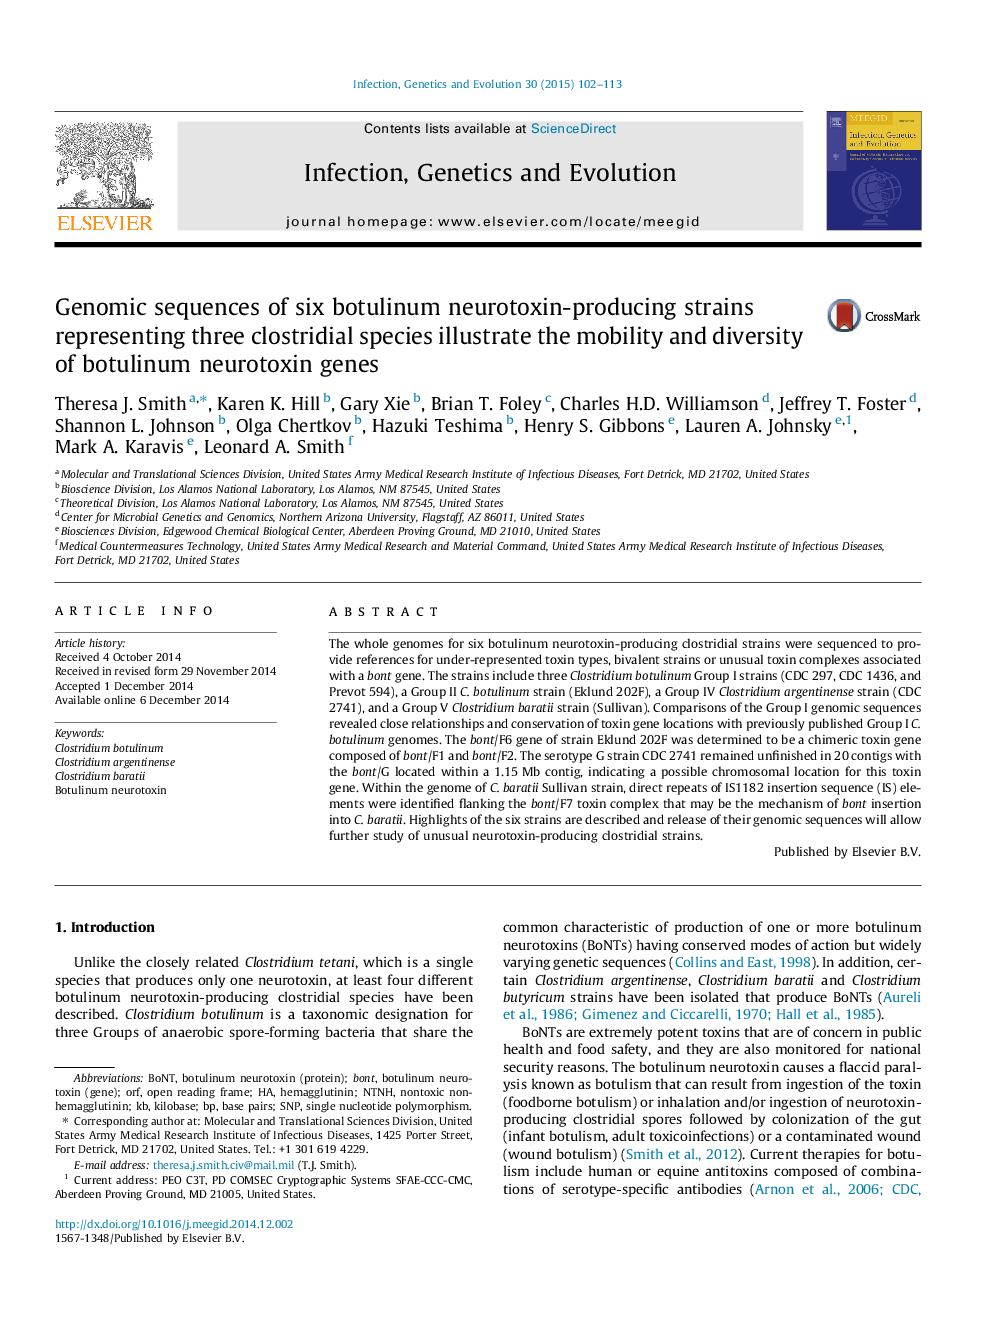 توالی ژنومی شش گونه تولید کننده نوروتوکسین بوتولینوم نشان دهنده سه گونه کلستریدیال، تحرک و تنوع ژنهای نوروتوکسین بوتولینوم را نشان می دهد 